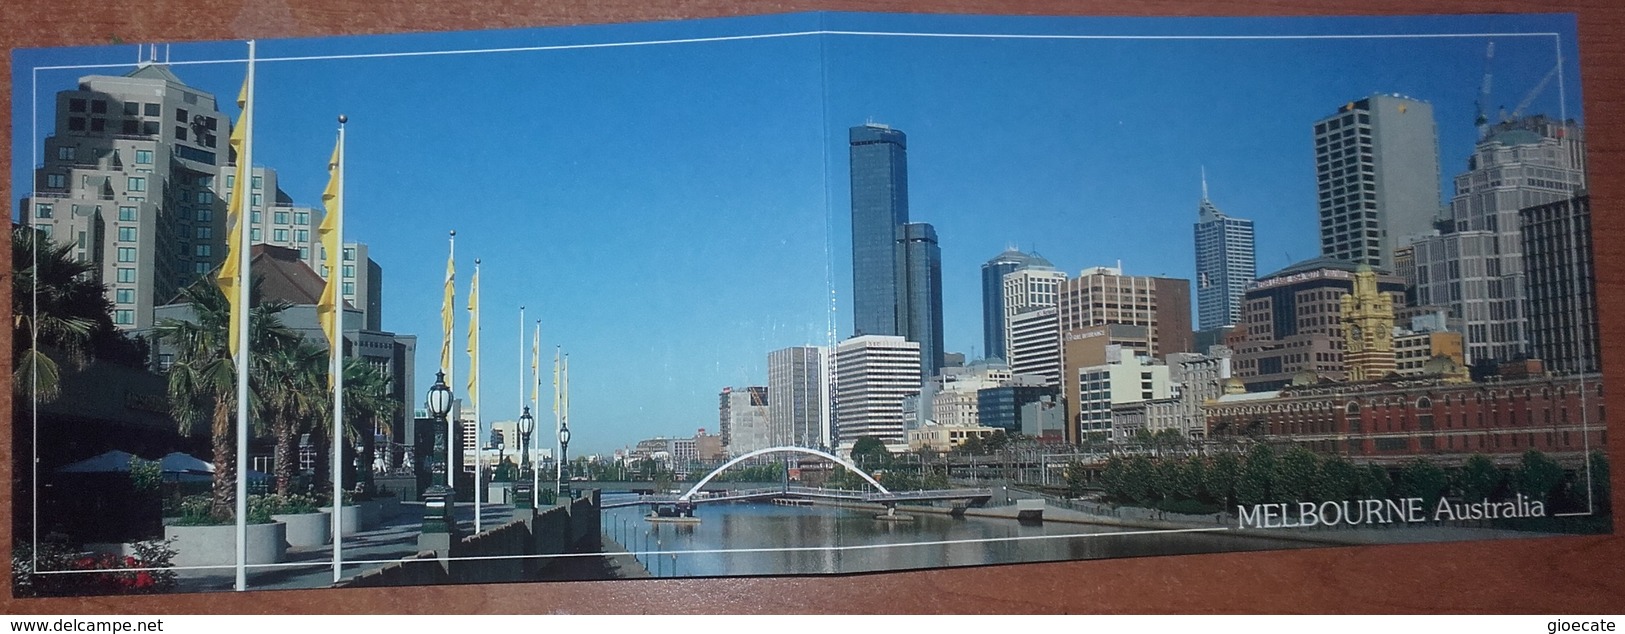 Cartolina Doppia MELBOURNE - Non Viaggiata - (810) - Melbourne